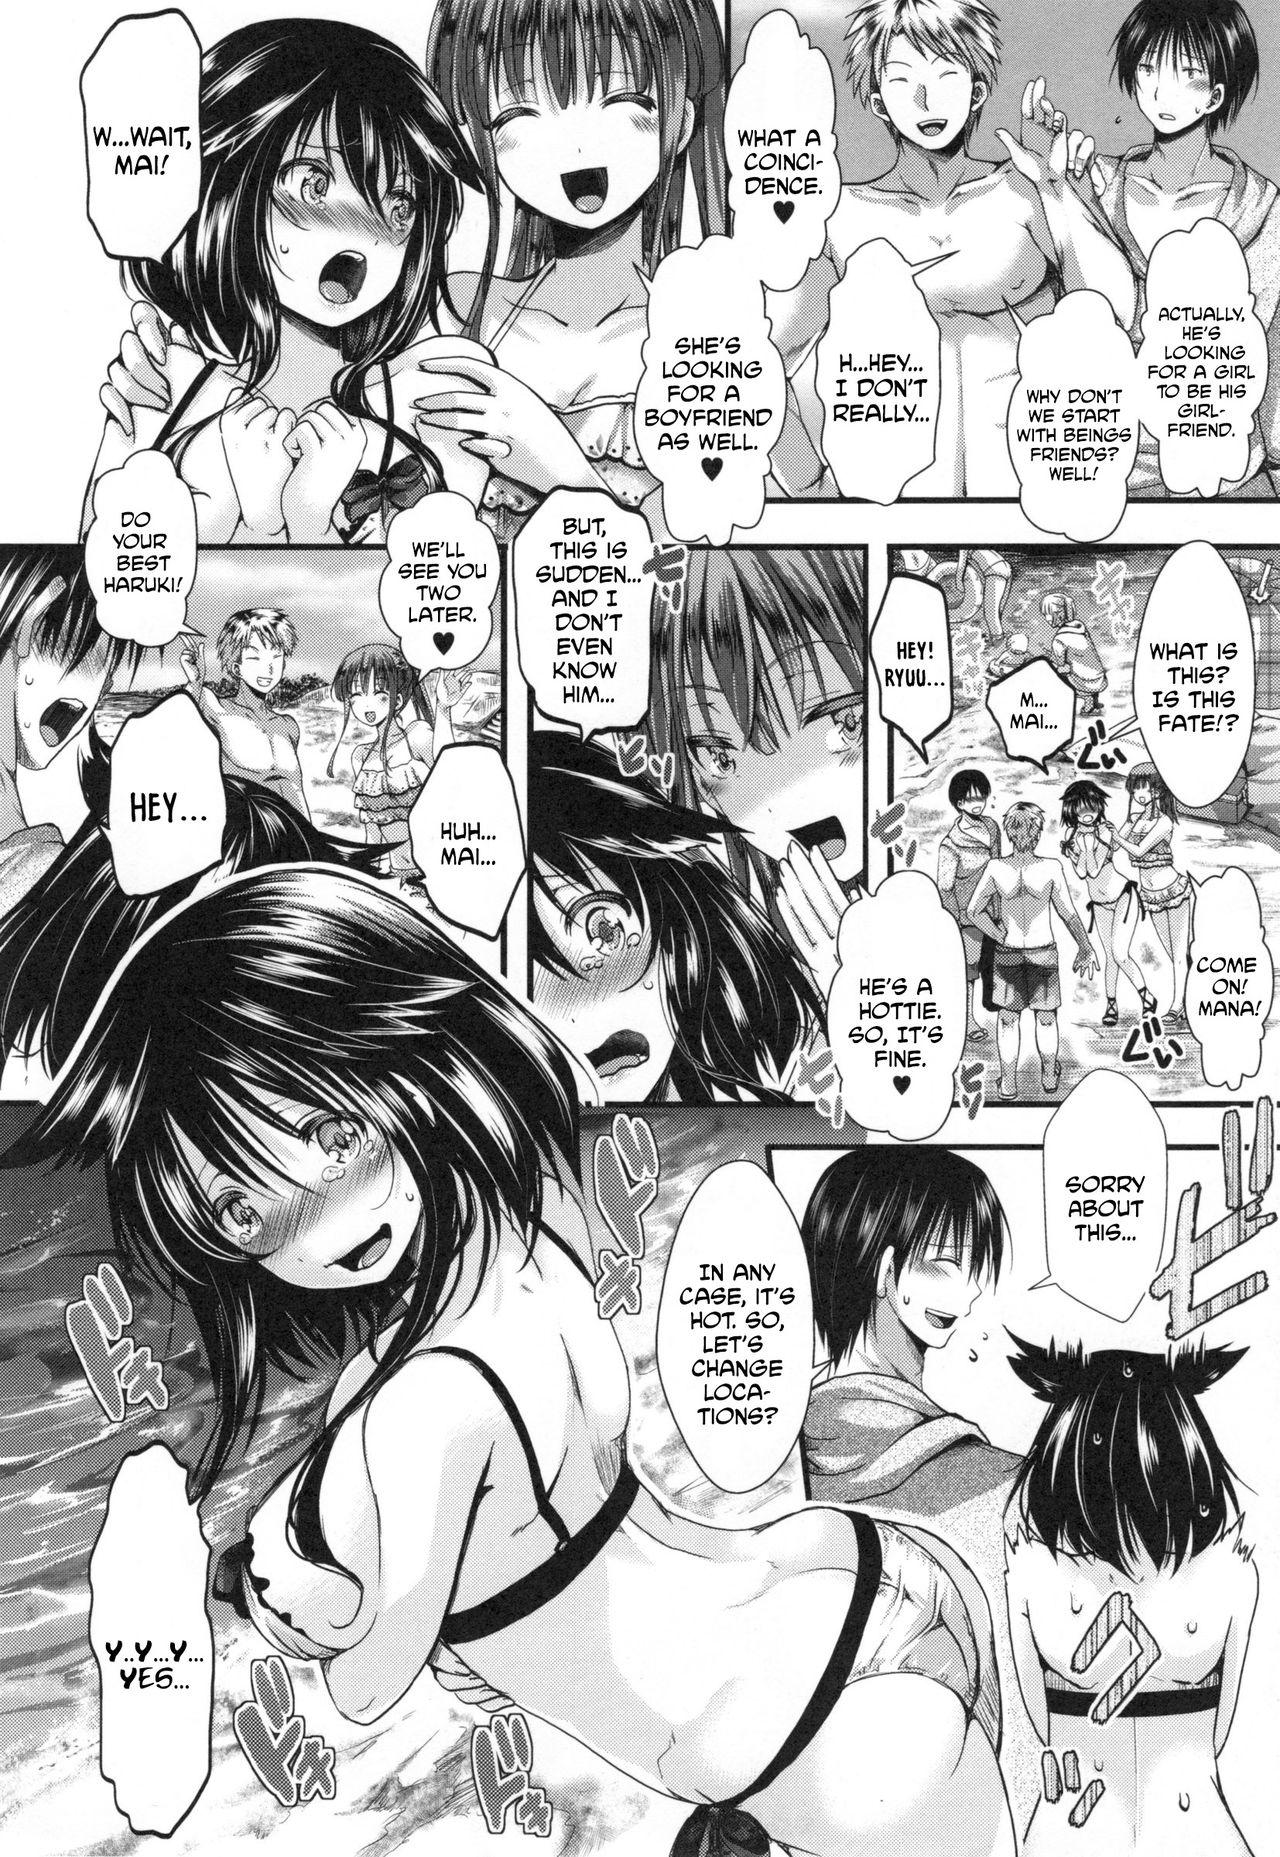 Gostoso Kono Natsu, Shoujo wa Bitch ni Naru. - Bitch in Summer Student - Page 2